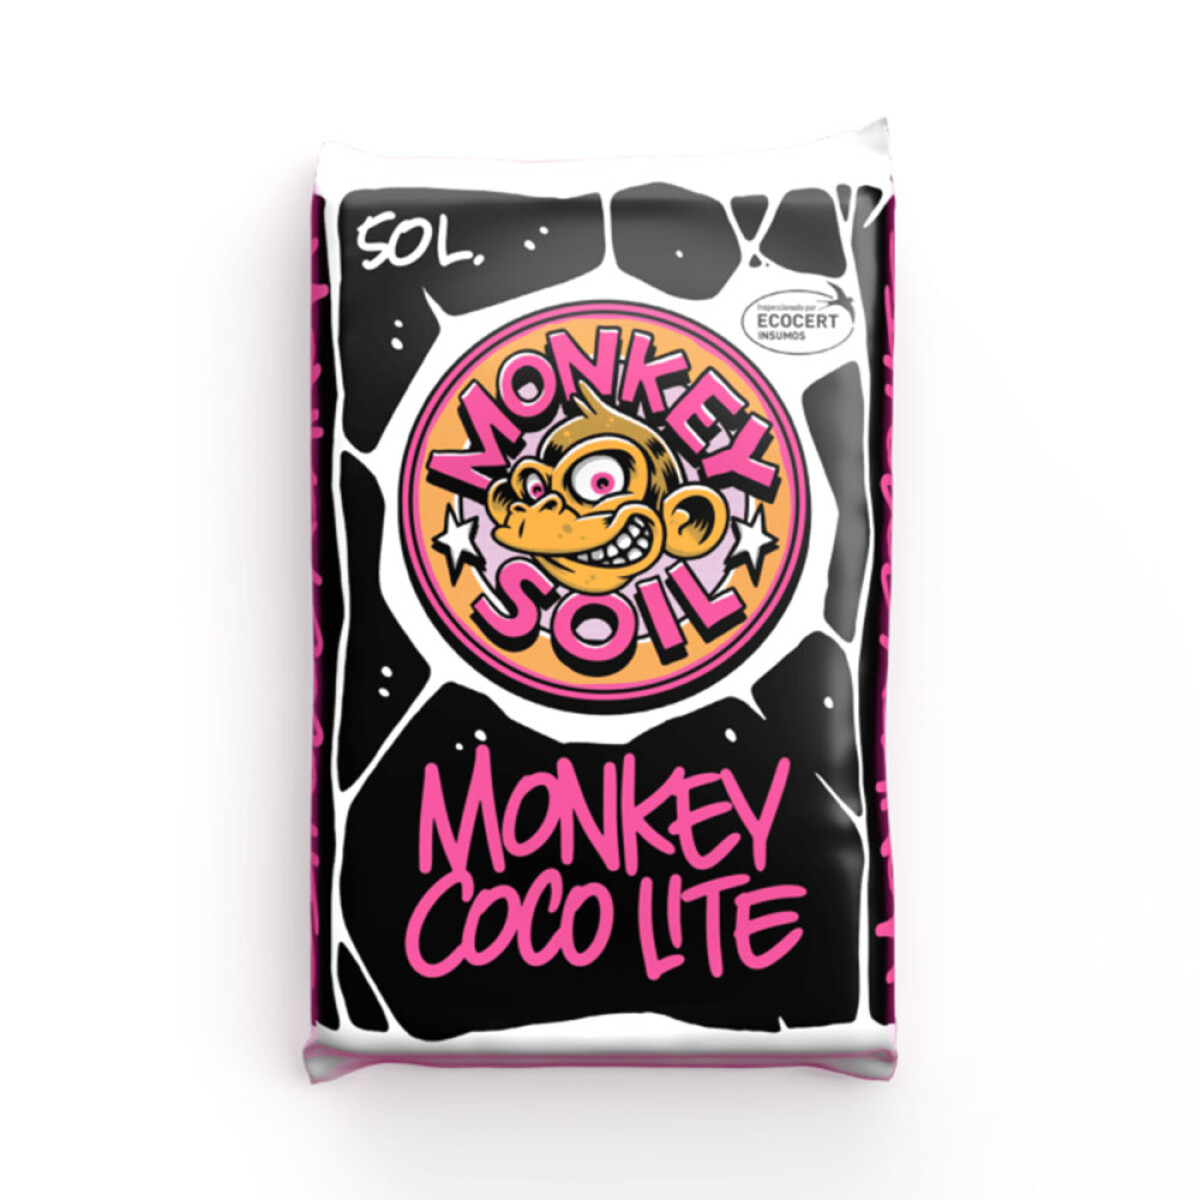 COCO LITE MONKEY SOIL - 50L 